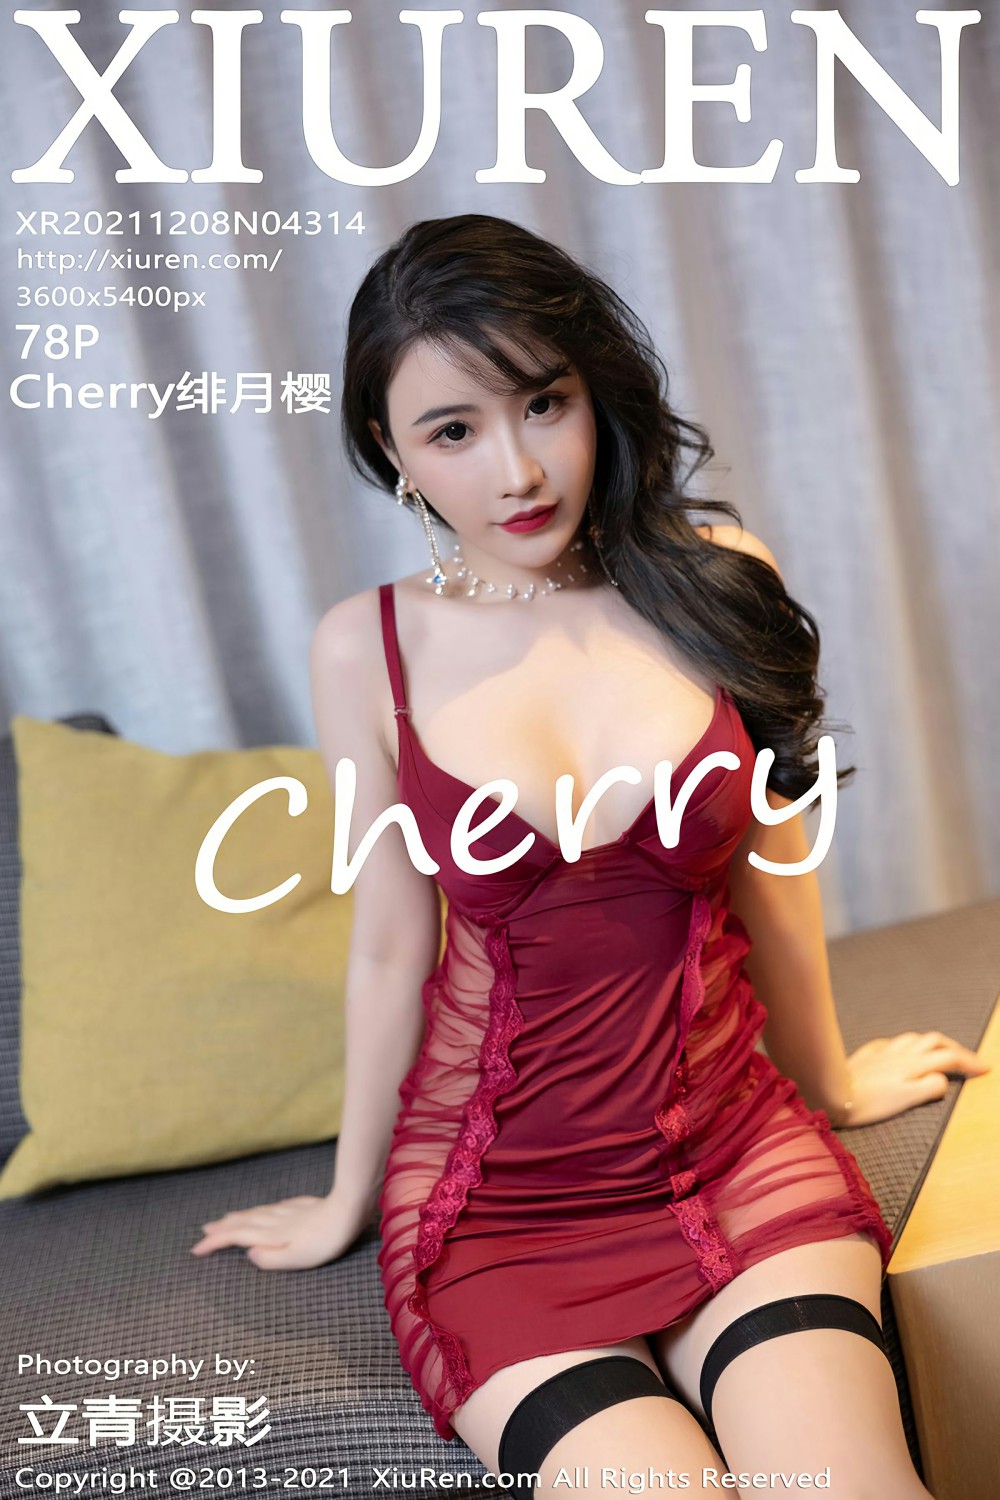 [XiuRen秀人网] 2021.12.08 No.4314 Cherry绯月樱 红色睡衣 [78+1P]-第1张图片-宅男套图吧